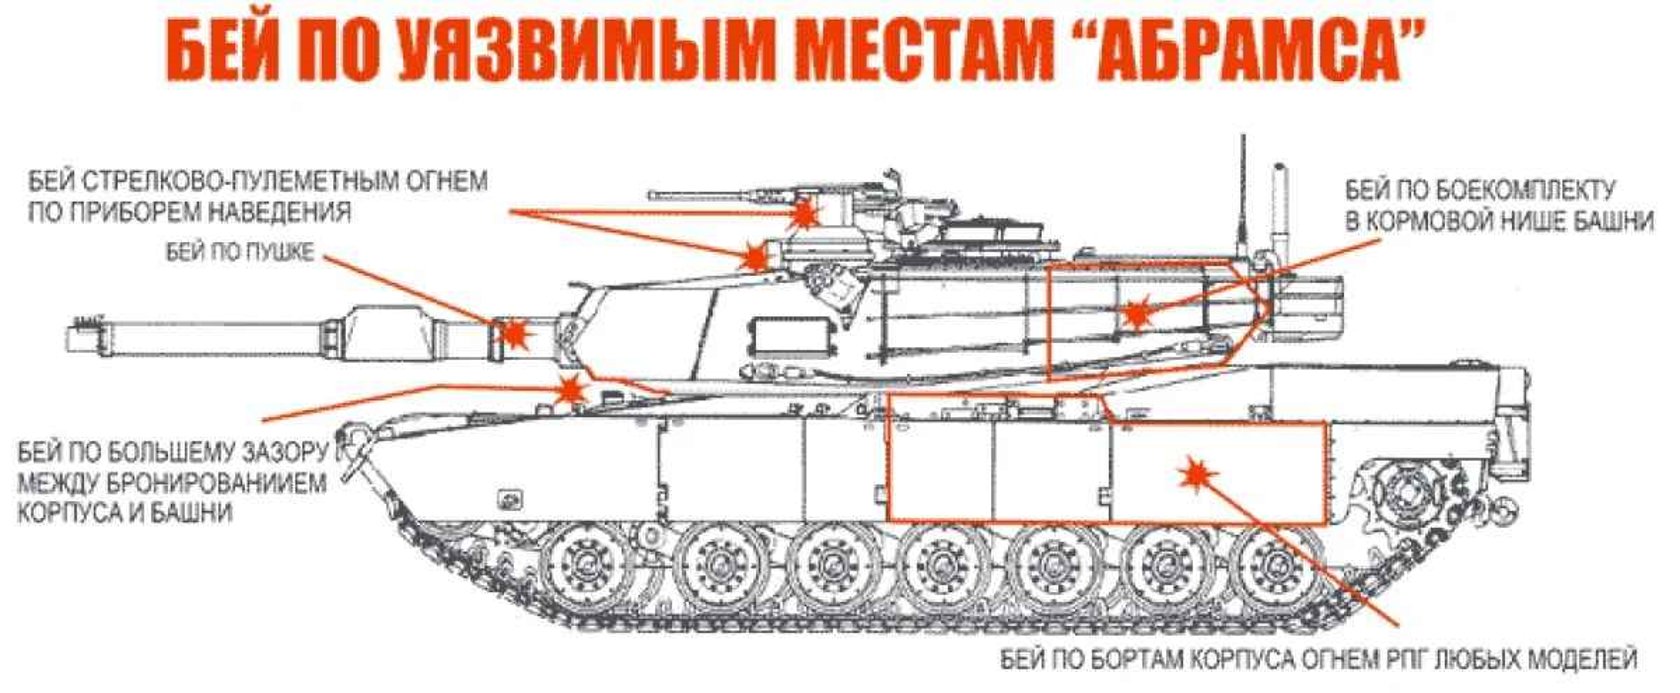 Expertos rusos publican una guía sobre cómo destruir un tanque Abrams 